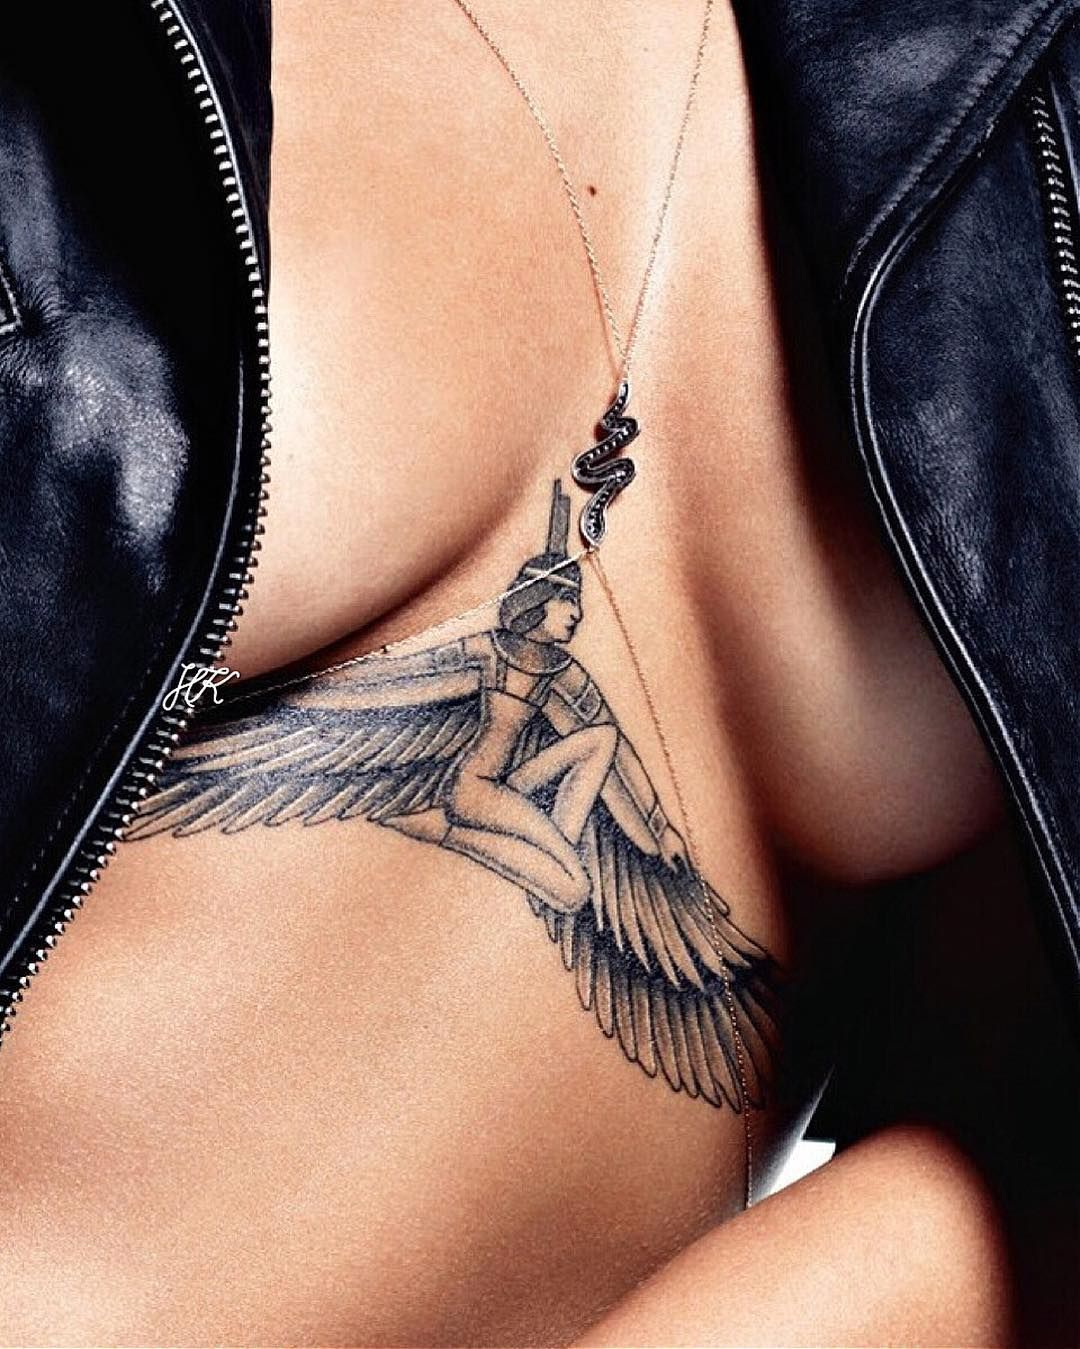 Tattoo Rihanna Chest Arm Tattoo Sites